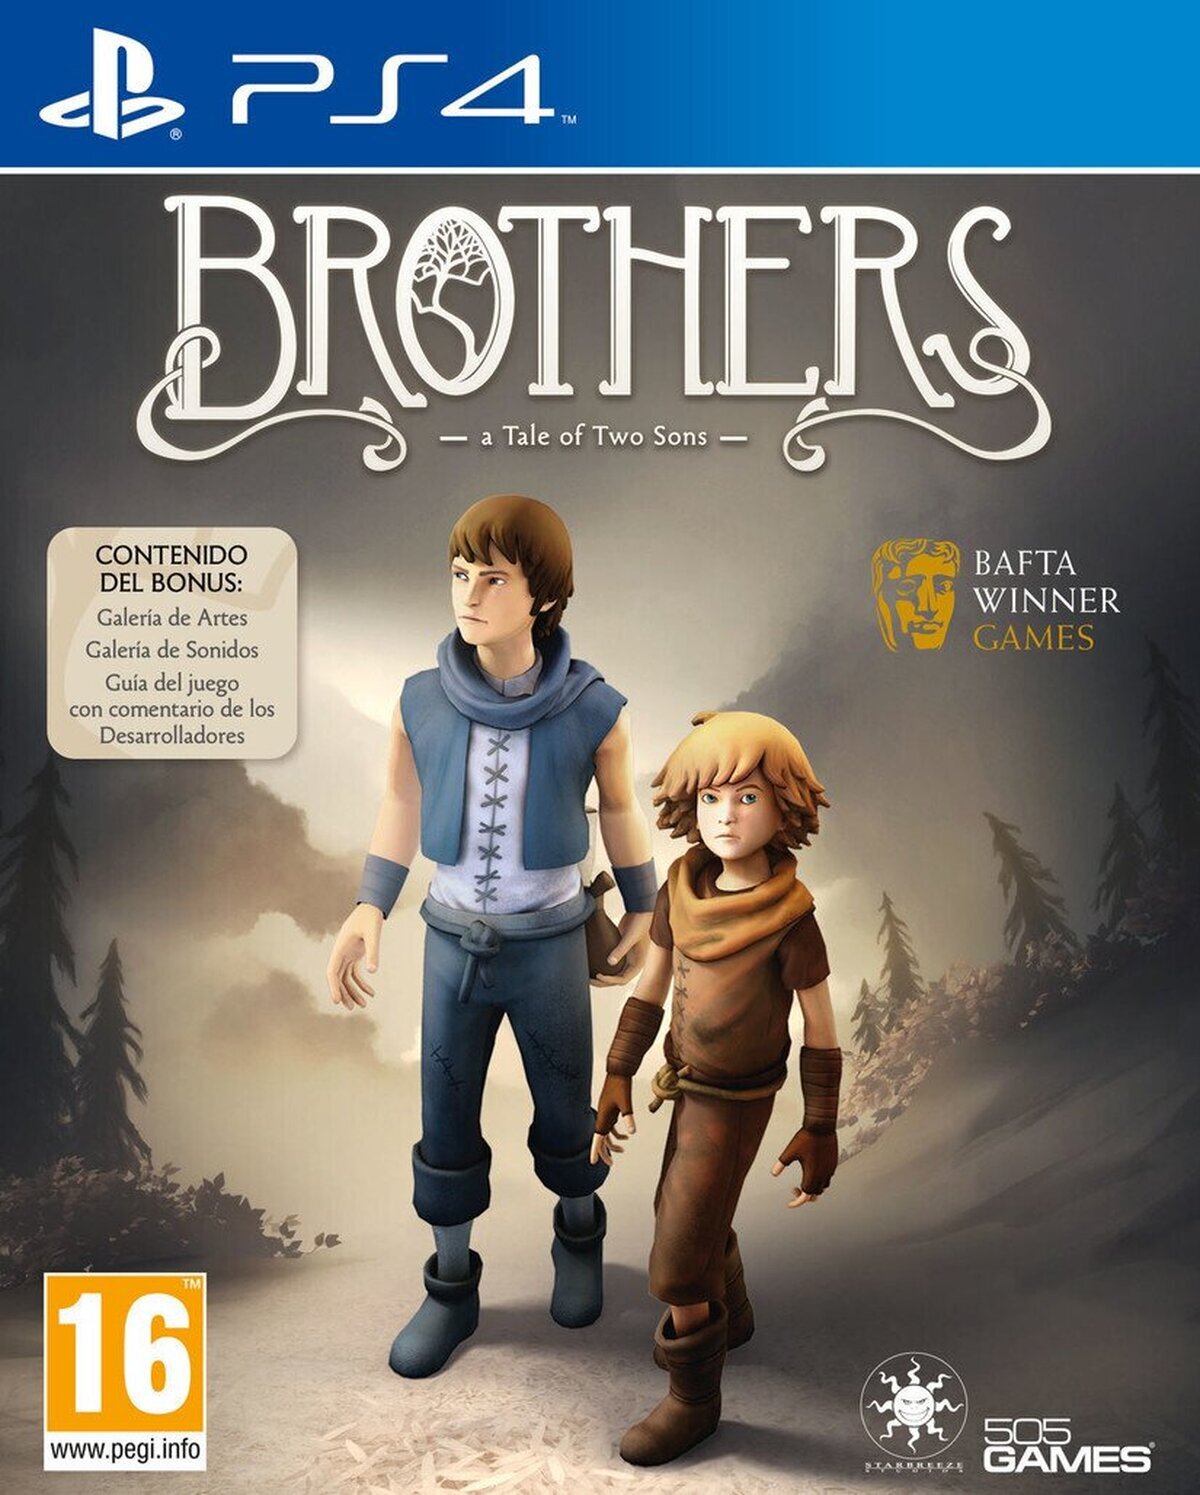 Brothers: A Tale of Two Sons saldrá para PS4 y Xbox One el 12 de agosto